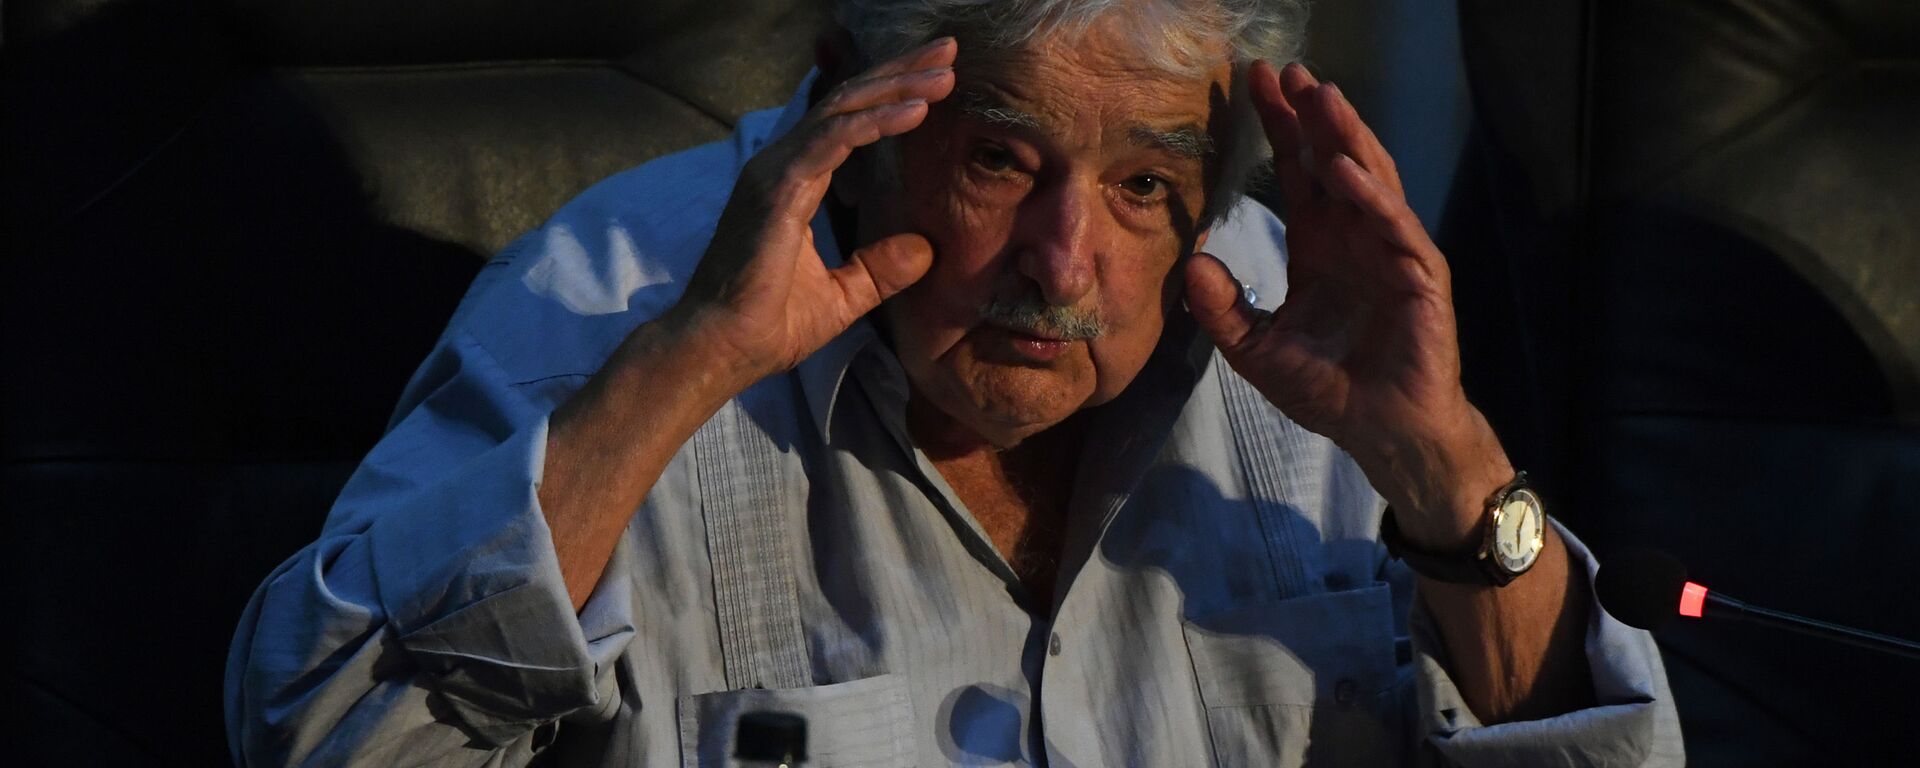 José Mujica, expresidente de Uruguay - Sputnik Mundo, 1920, 23.10.2020